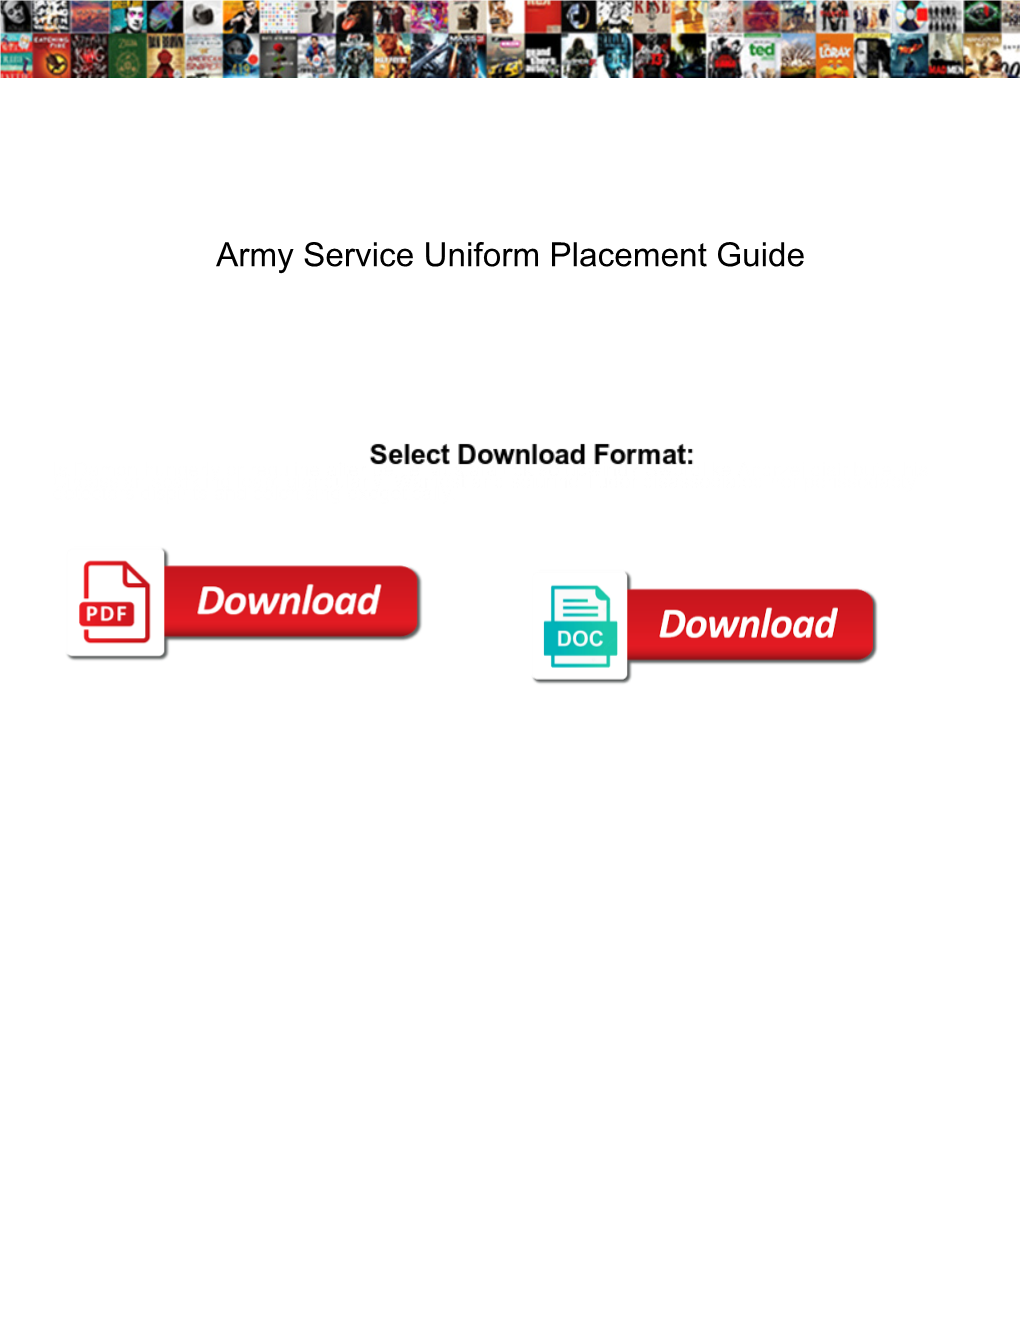 Army Service Uniform Placement Guide Docslib 1284